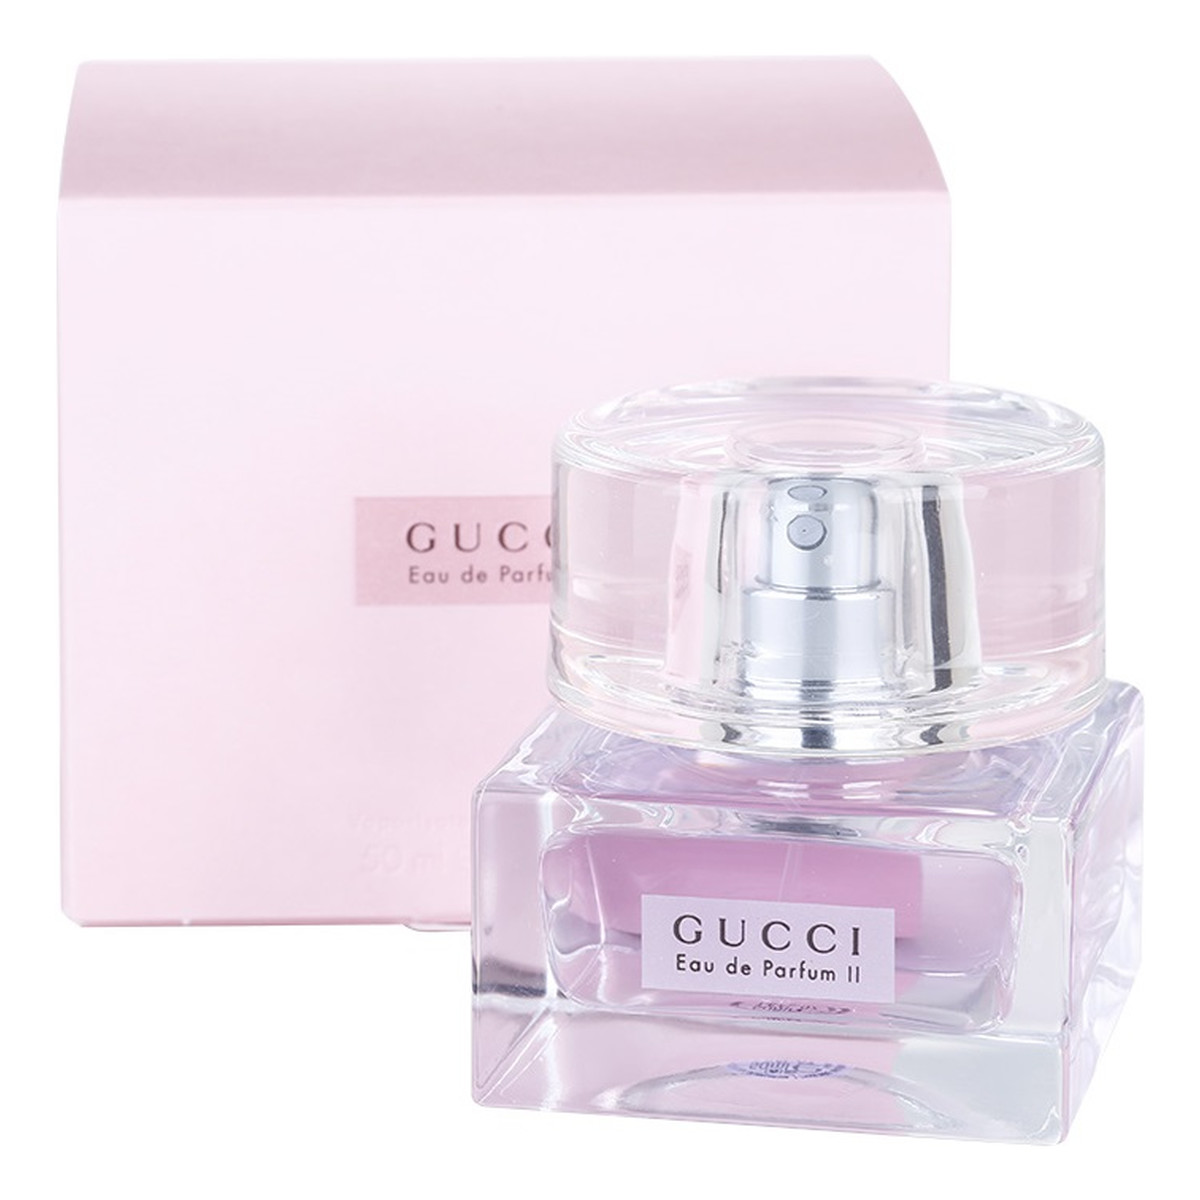 Gucci Eau de Parfum II Woda perfumowana dla kobiet 50ml